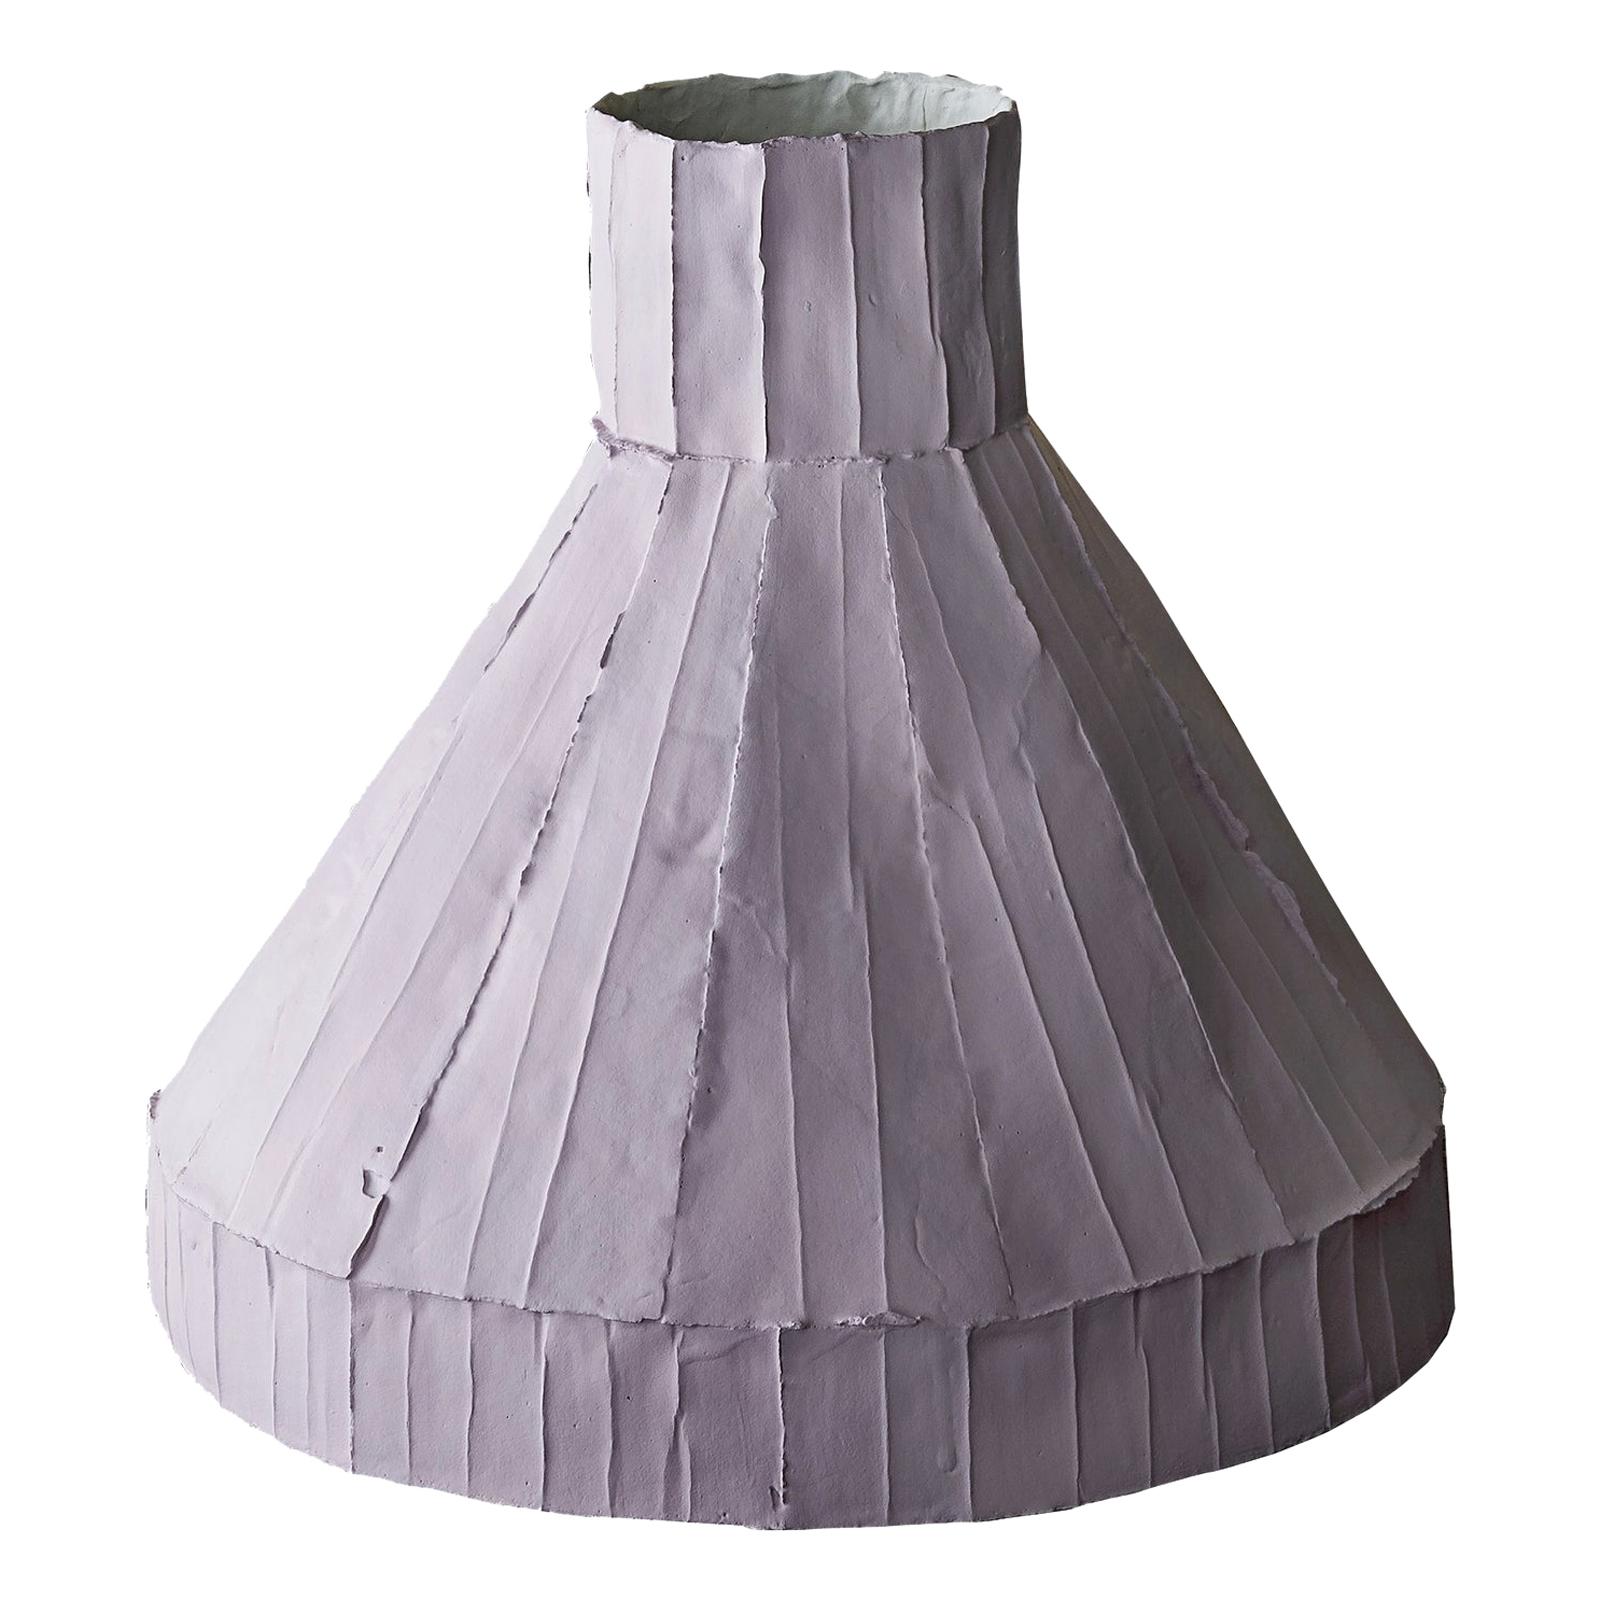 Contemporary Ceramic Vulcano Corteccia Textur Flieder Niedrige Vase